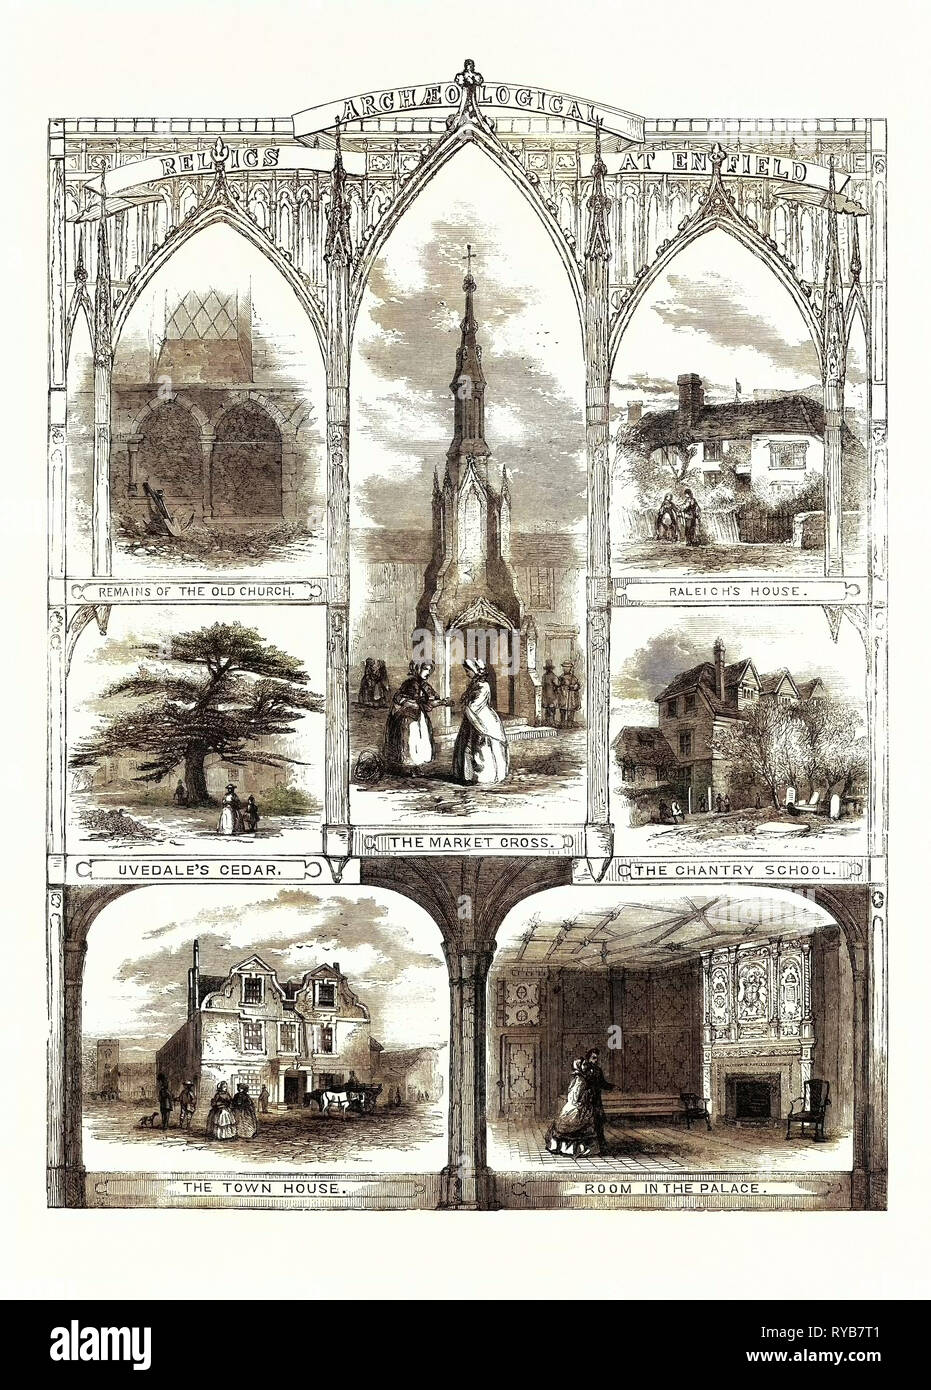 Archäologische Relikte am Enfield: Überreste der alten Kirche, Raleigh's House, Uvedale der Zeder, die Market Cross, die chantry Schule, das Stadthaus, Zimmer im Palast, UK, 1858 Stockfoto